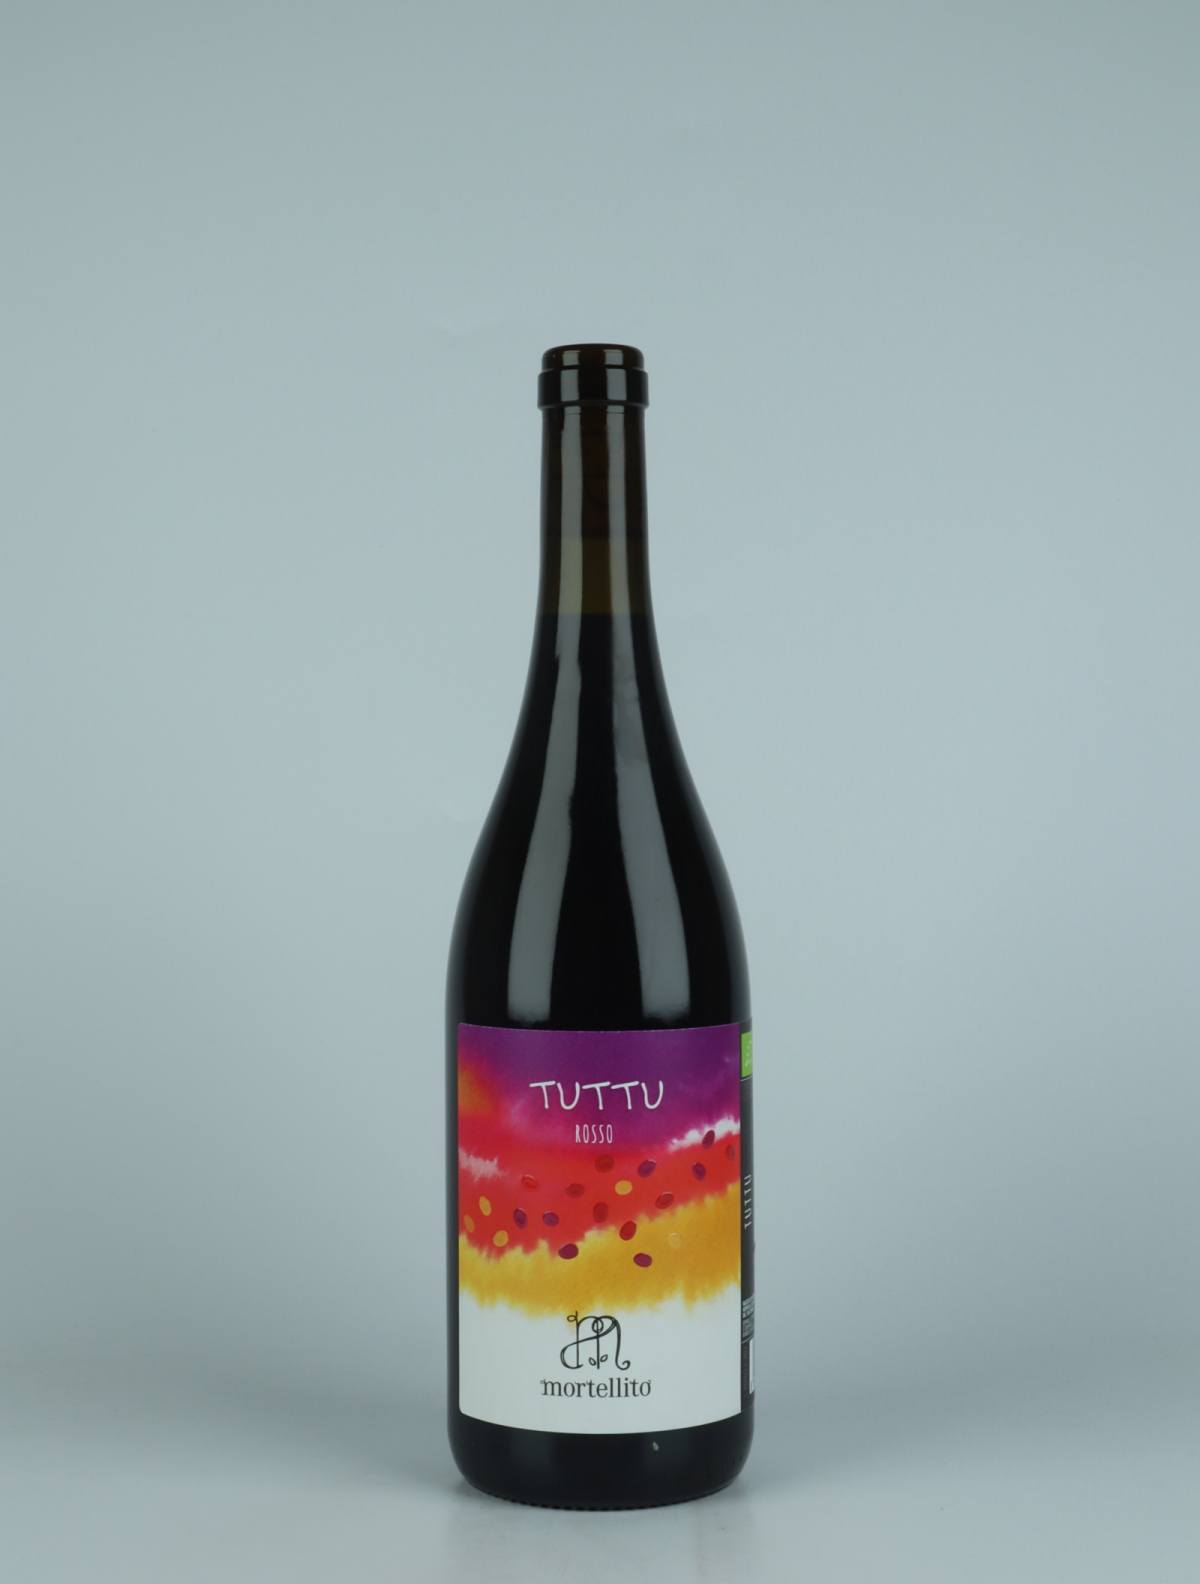 En flaske 2022 Tuttu Rødvin fra Il Mortellito, Sicilien i Italien